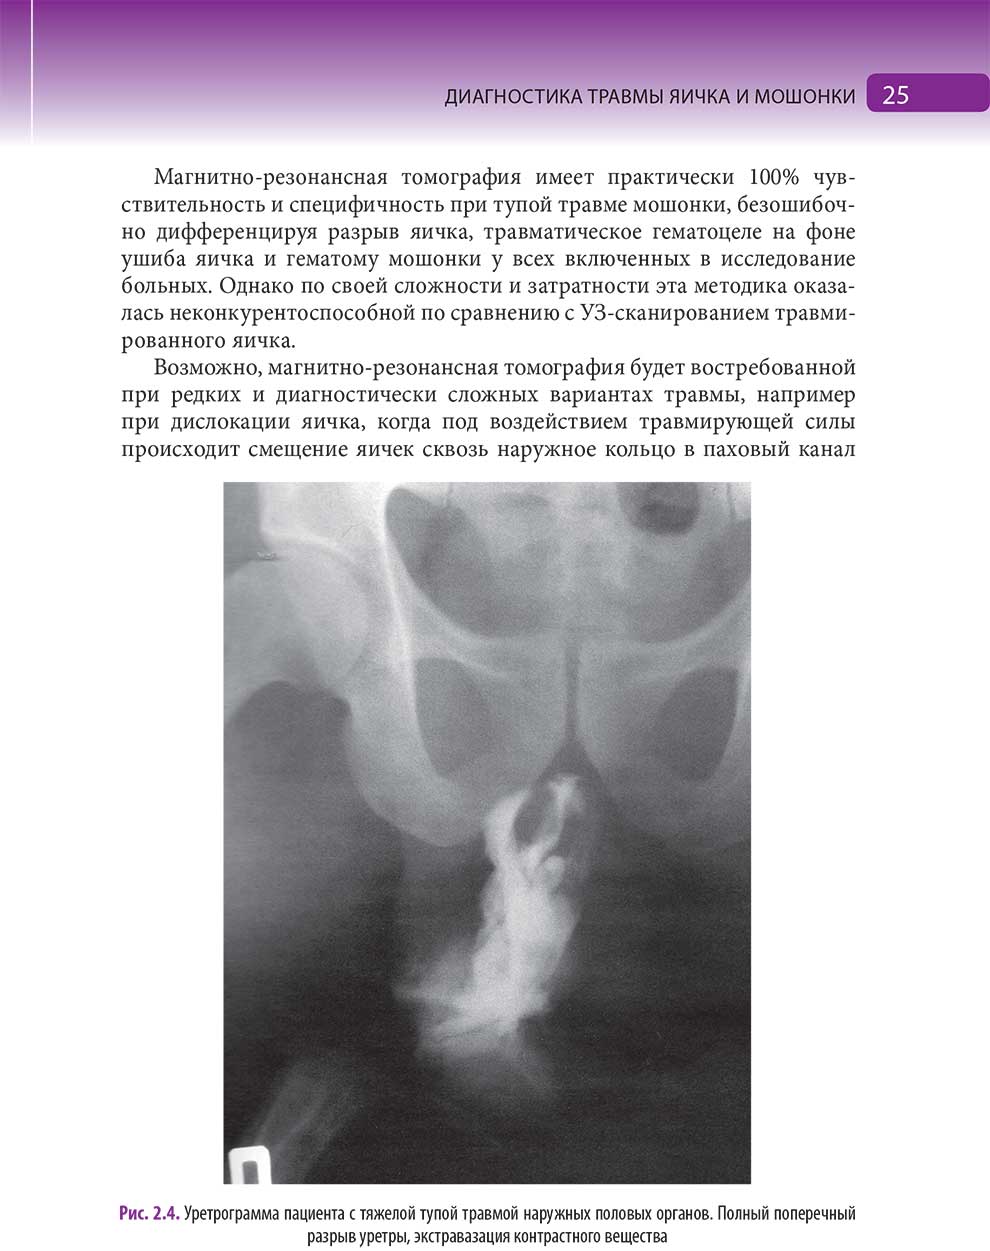 Уретрограмма пациента с тяжелой тупой травмой наружных половых органов